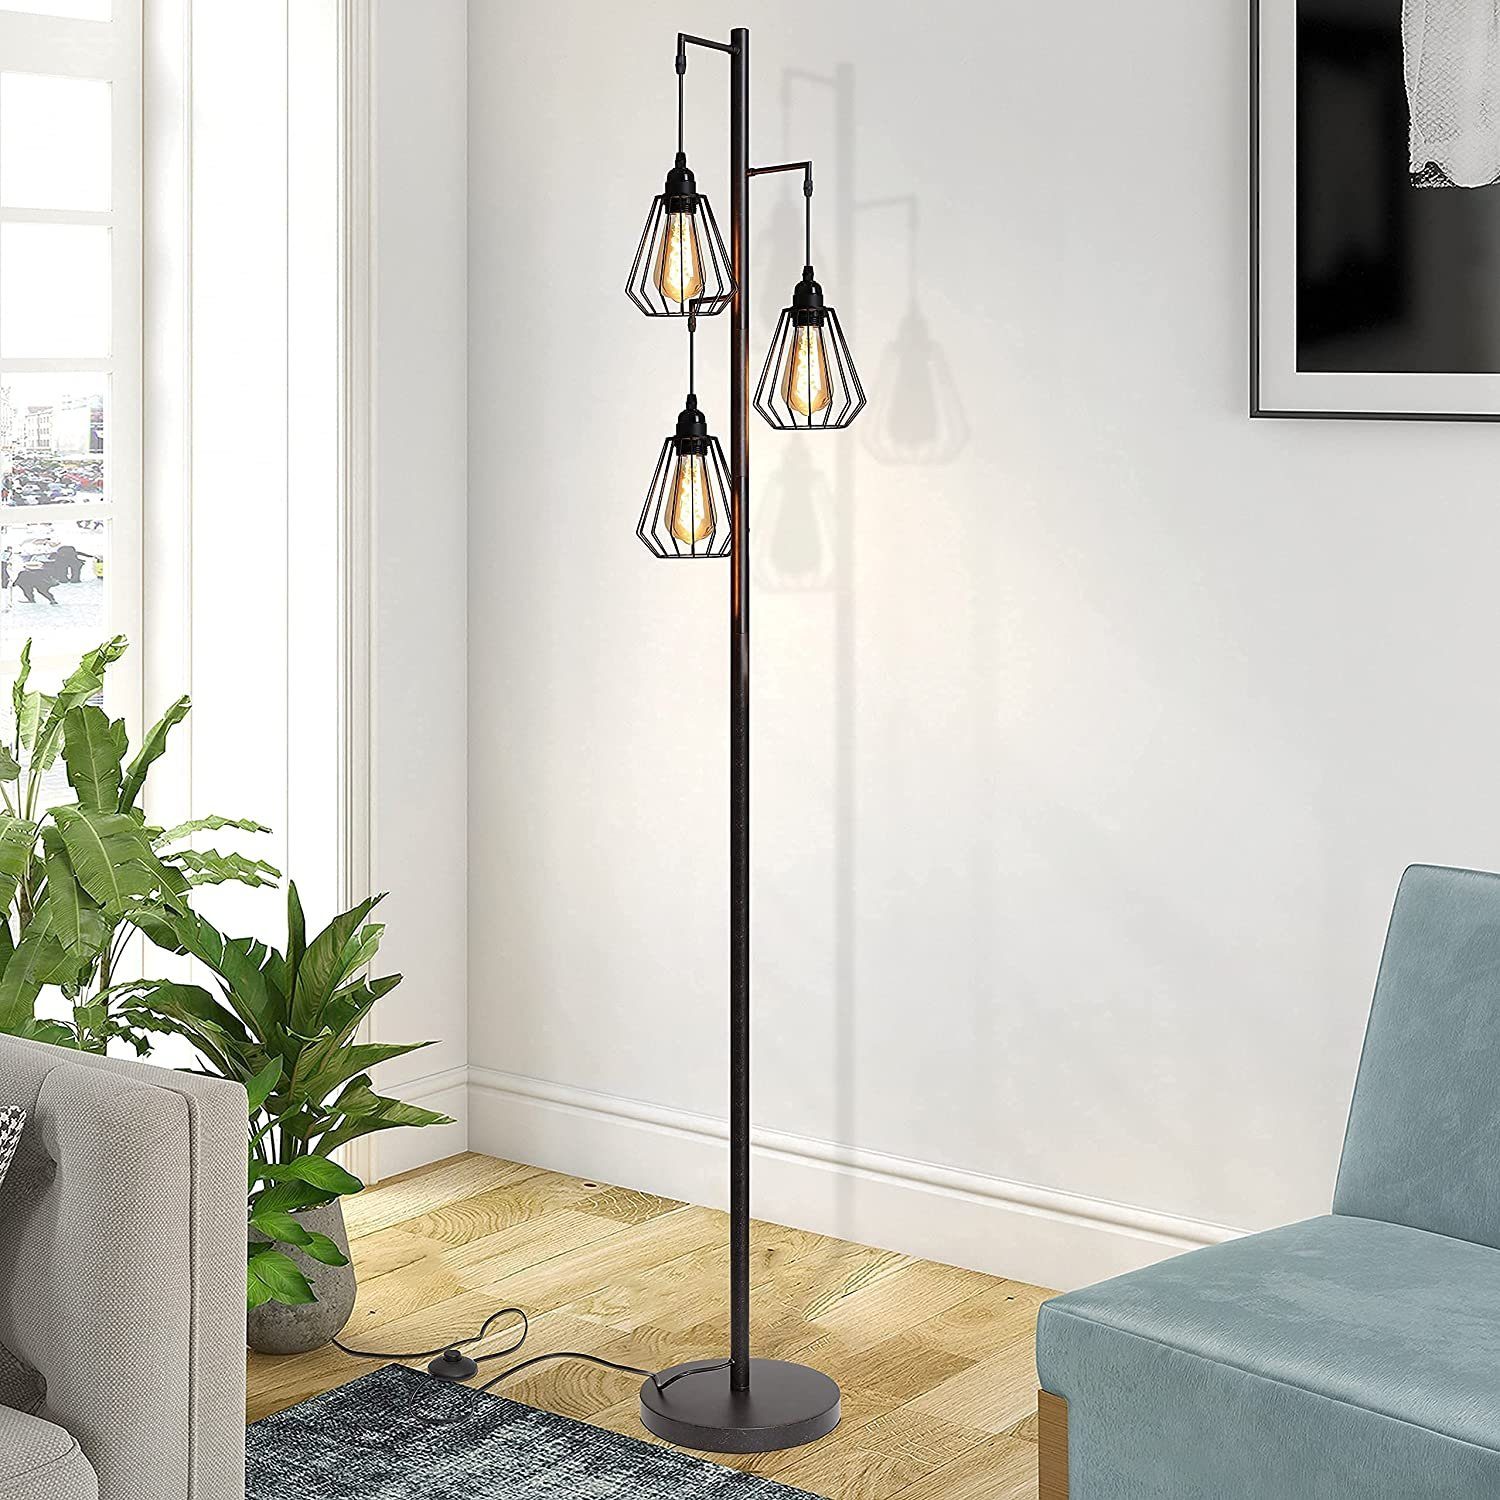 Dreibein Stehlampe weiß Holz Vintage Stehleuchte Retro Standlampe Schirm Lampe 